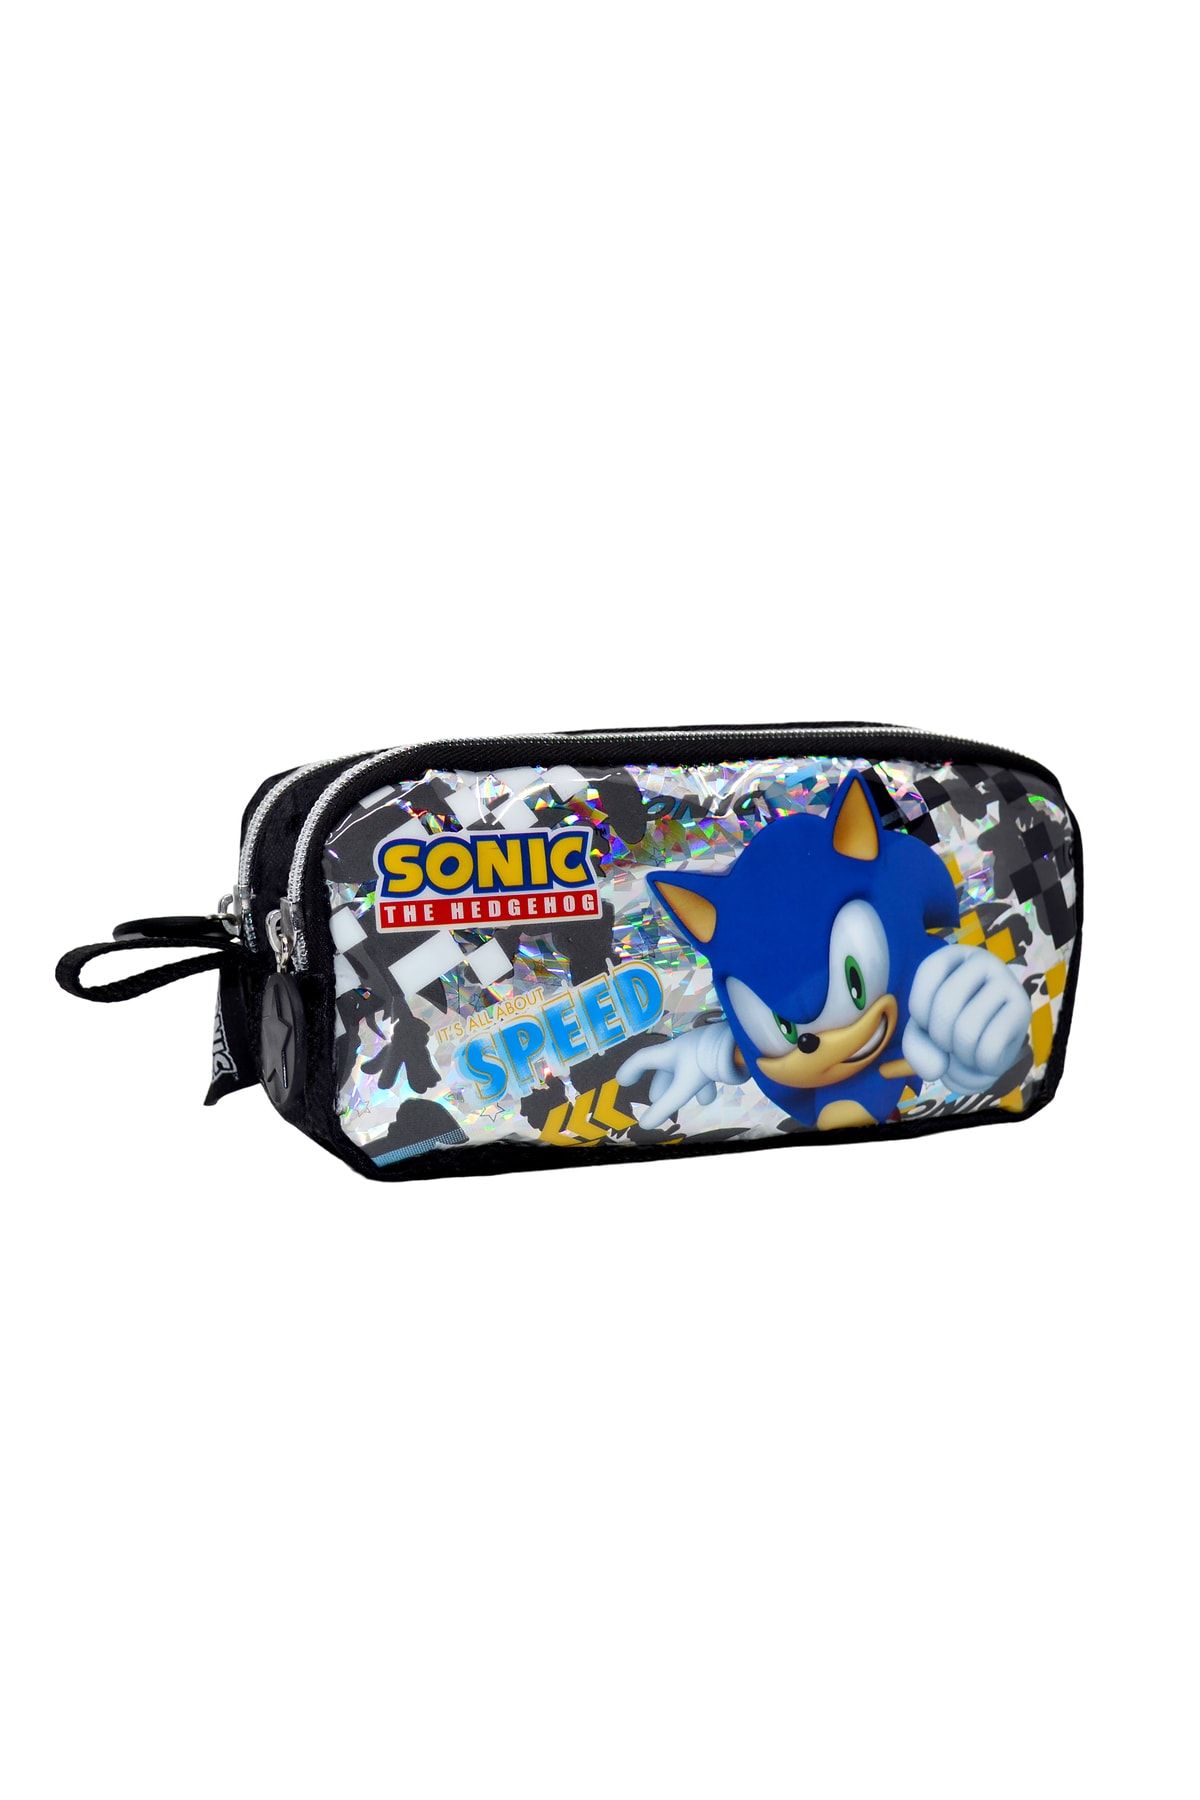 WİGGLE Sonic The Hedgehog Kalem Çantası Çift Bölmeli Kalemlik